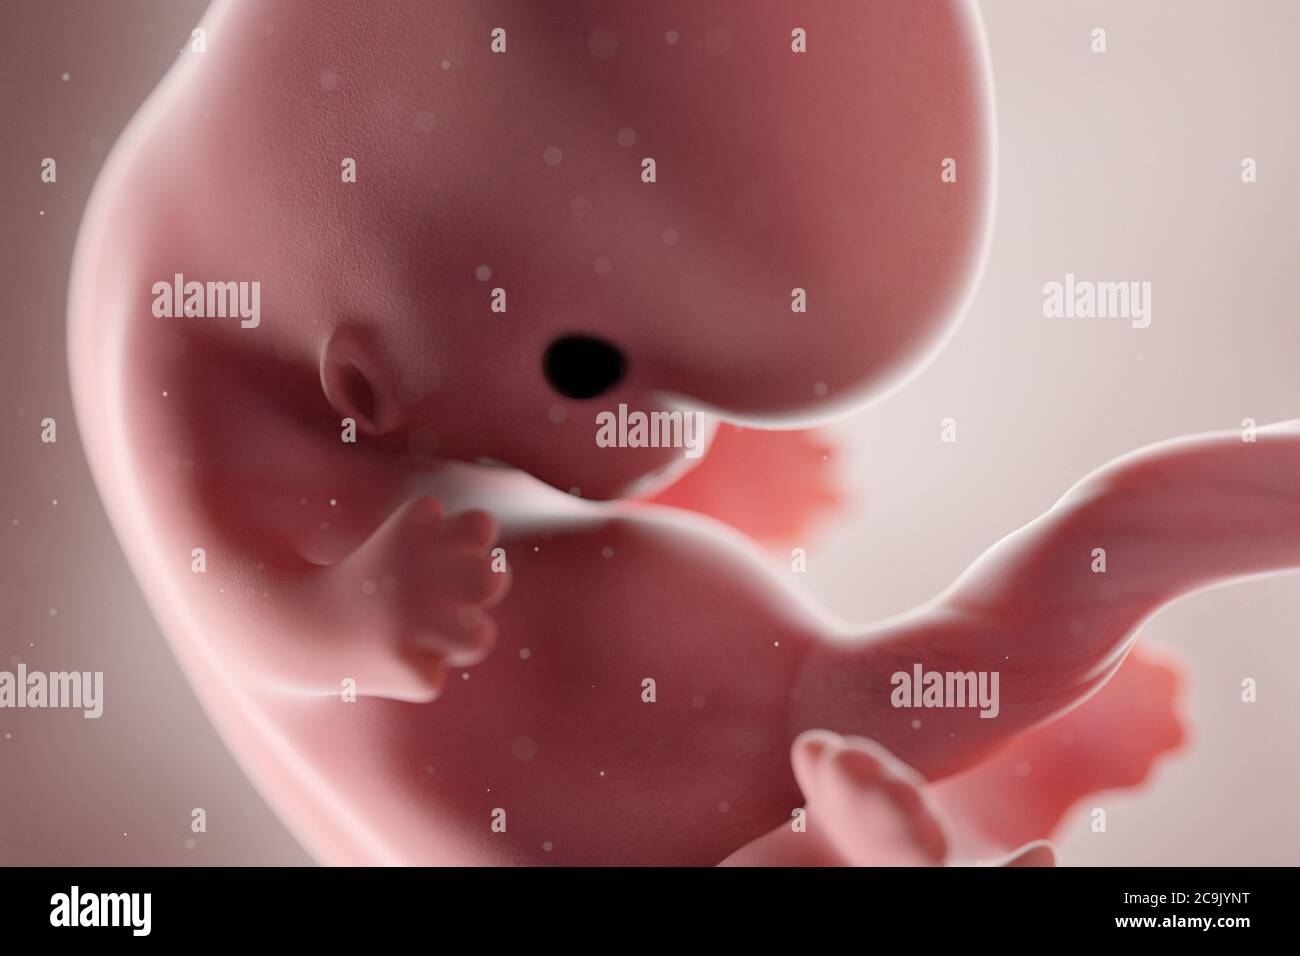 Fœtus humain, semaine 8, illustration. Banque D'Images